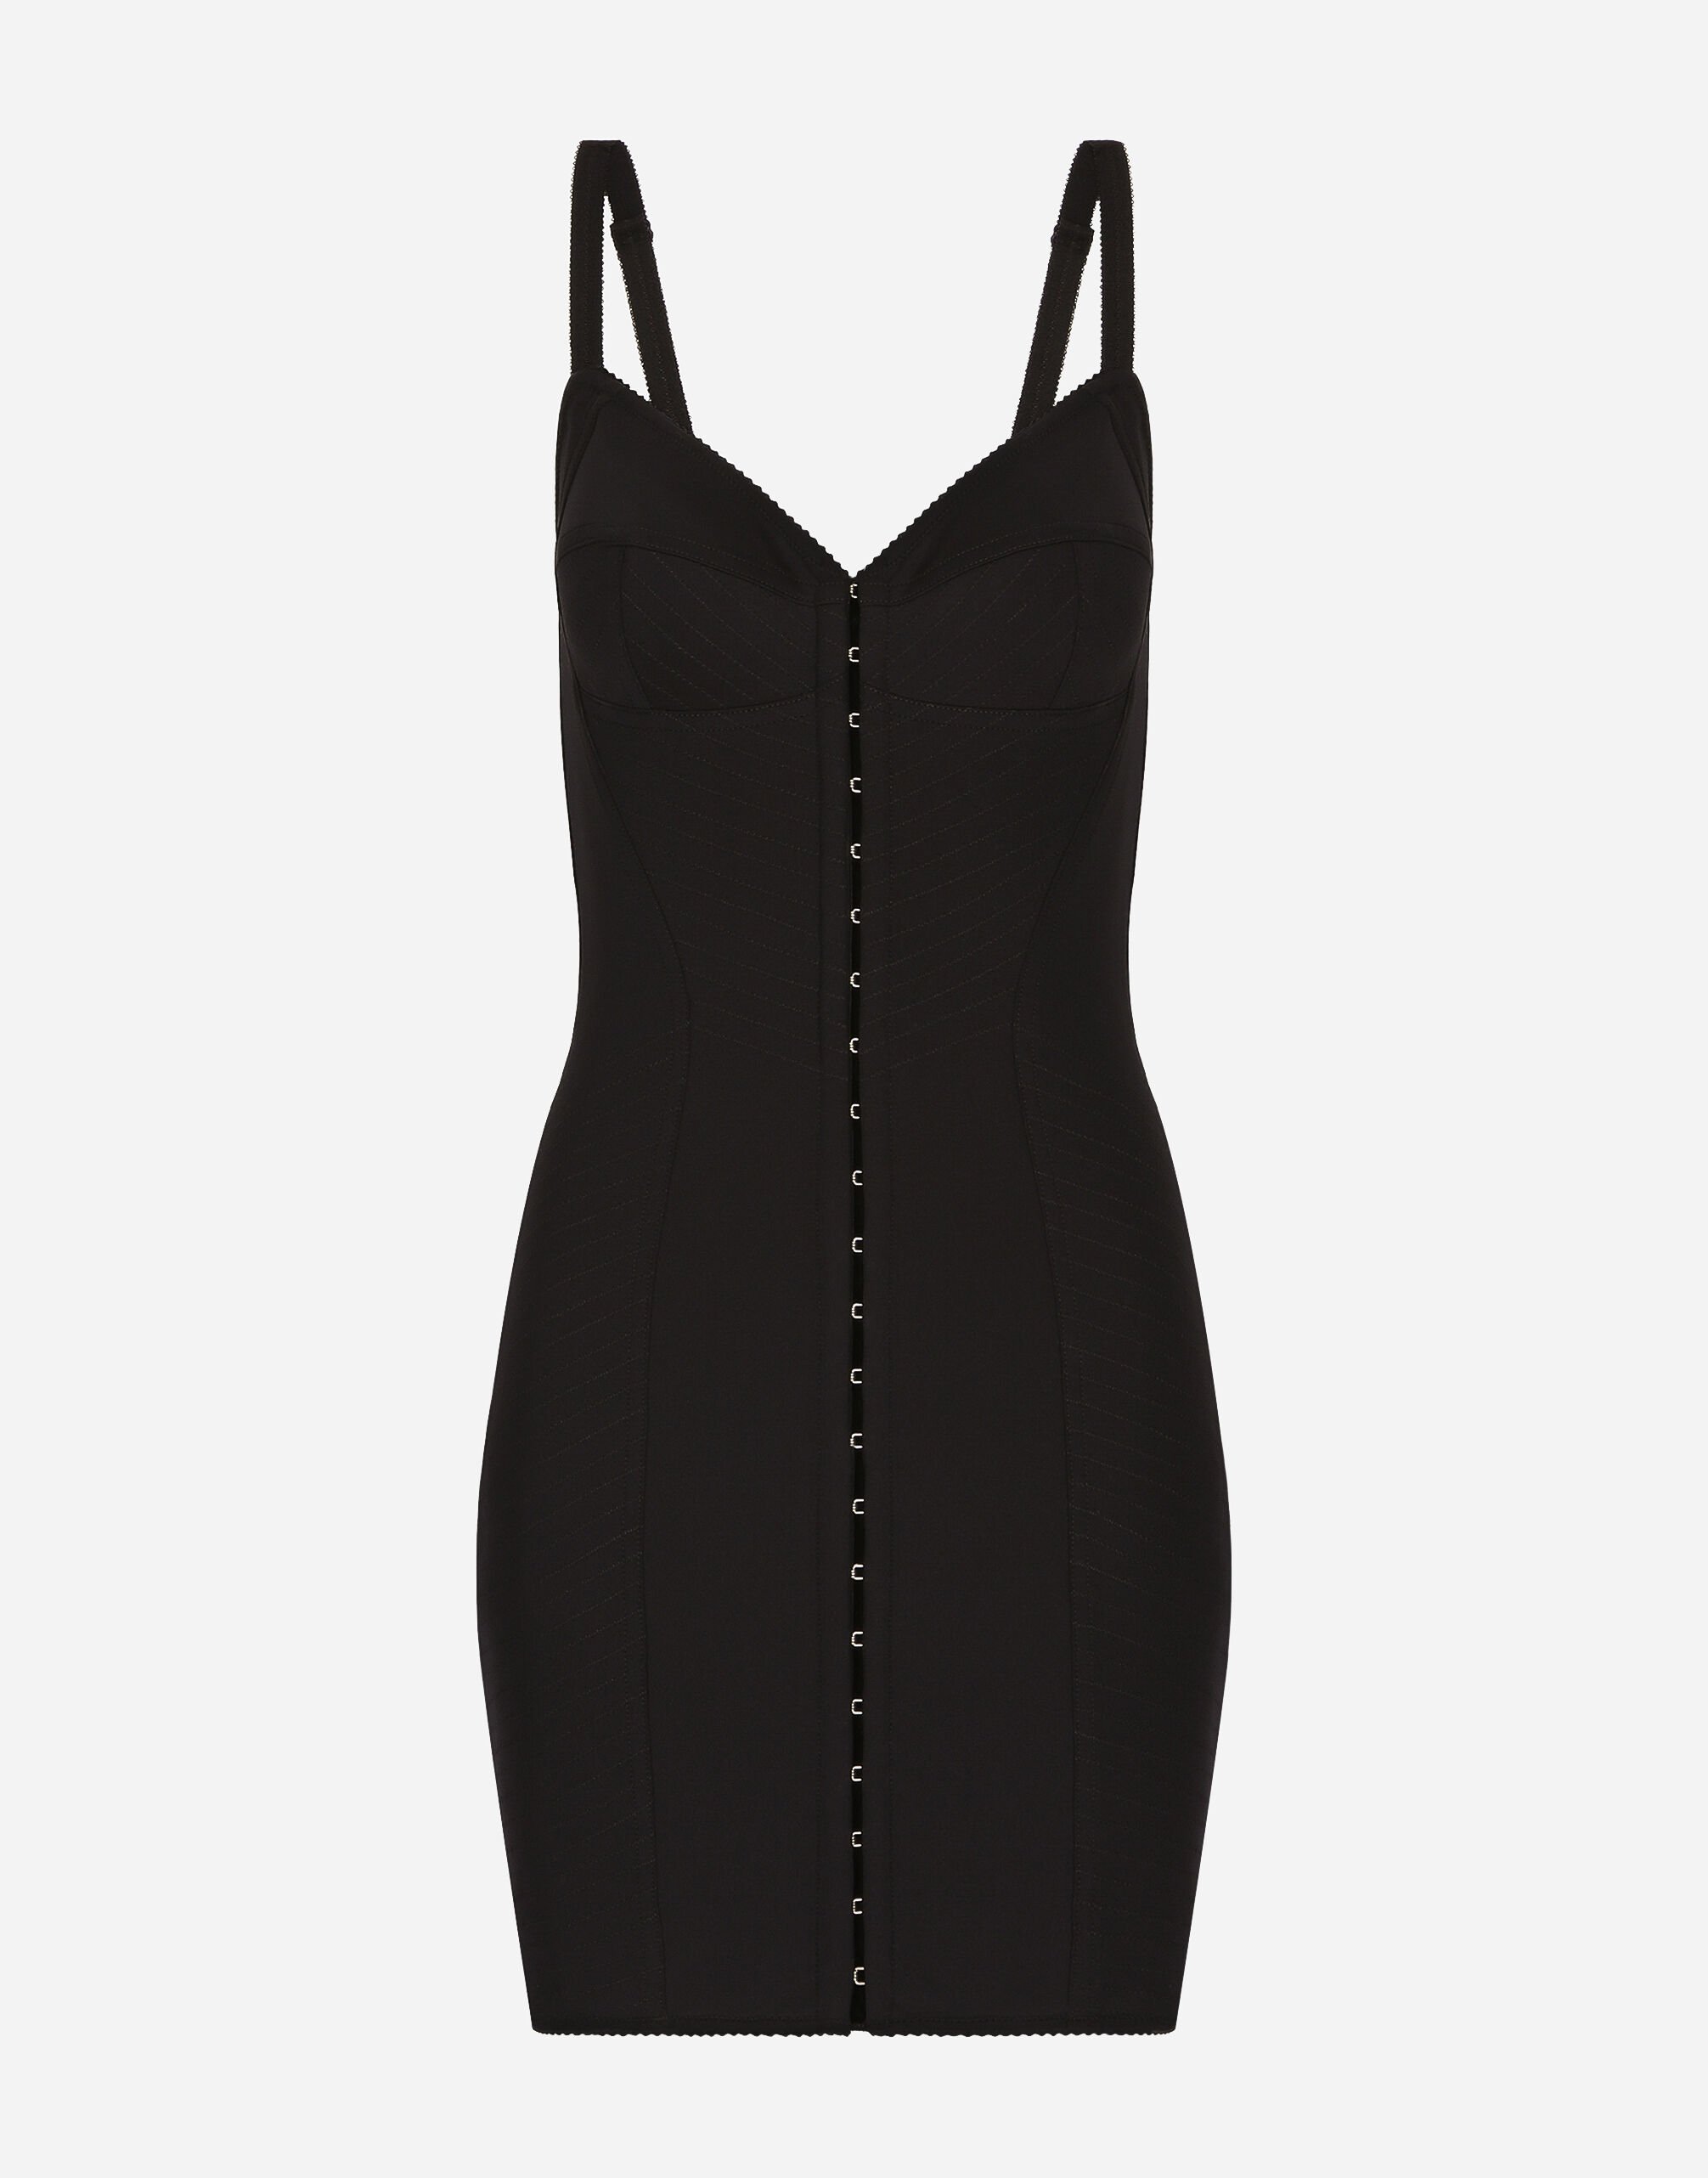 Dolce & Gabbana Short light technical jersey dress Black F0D1CTFUBFX